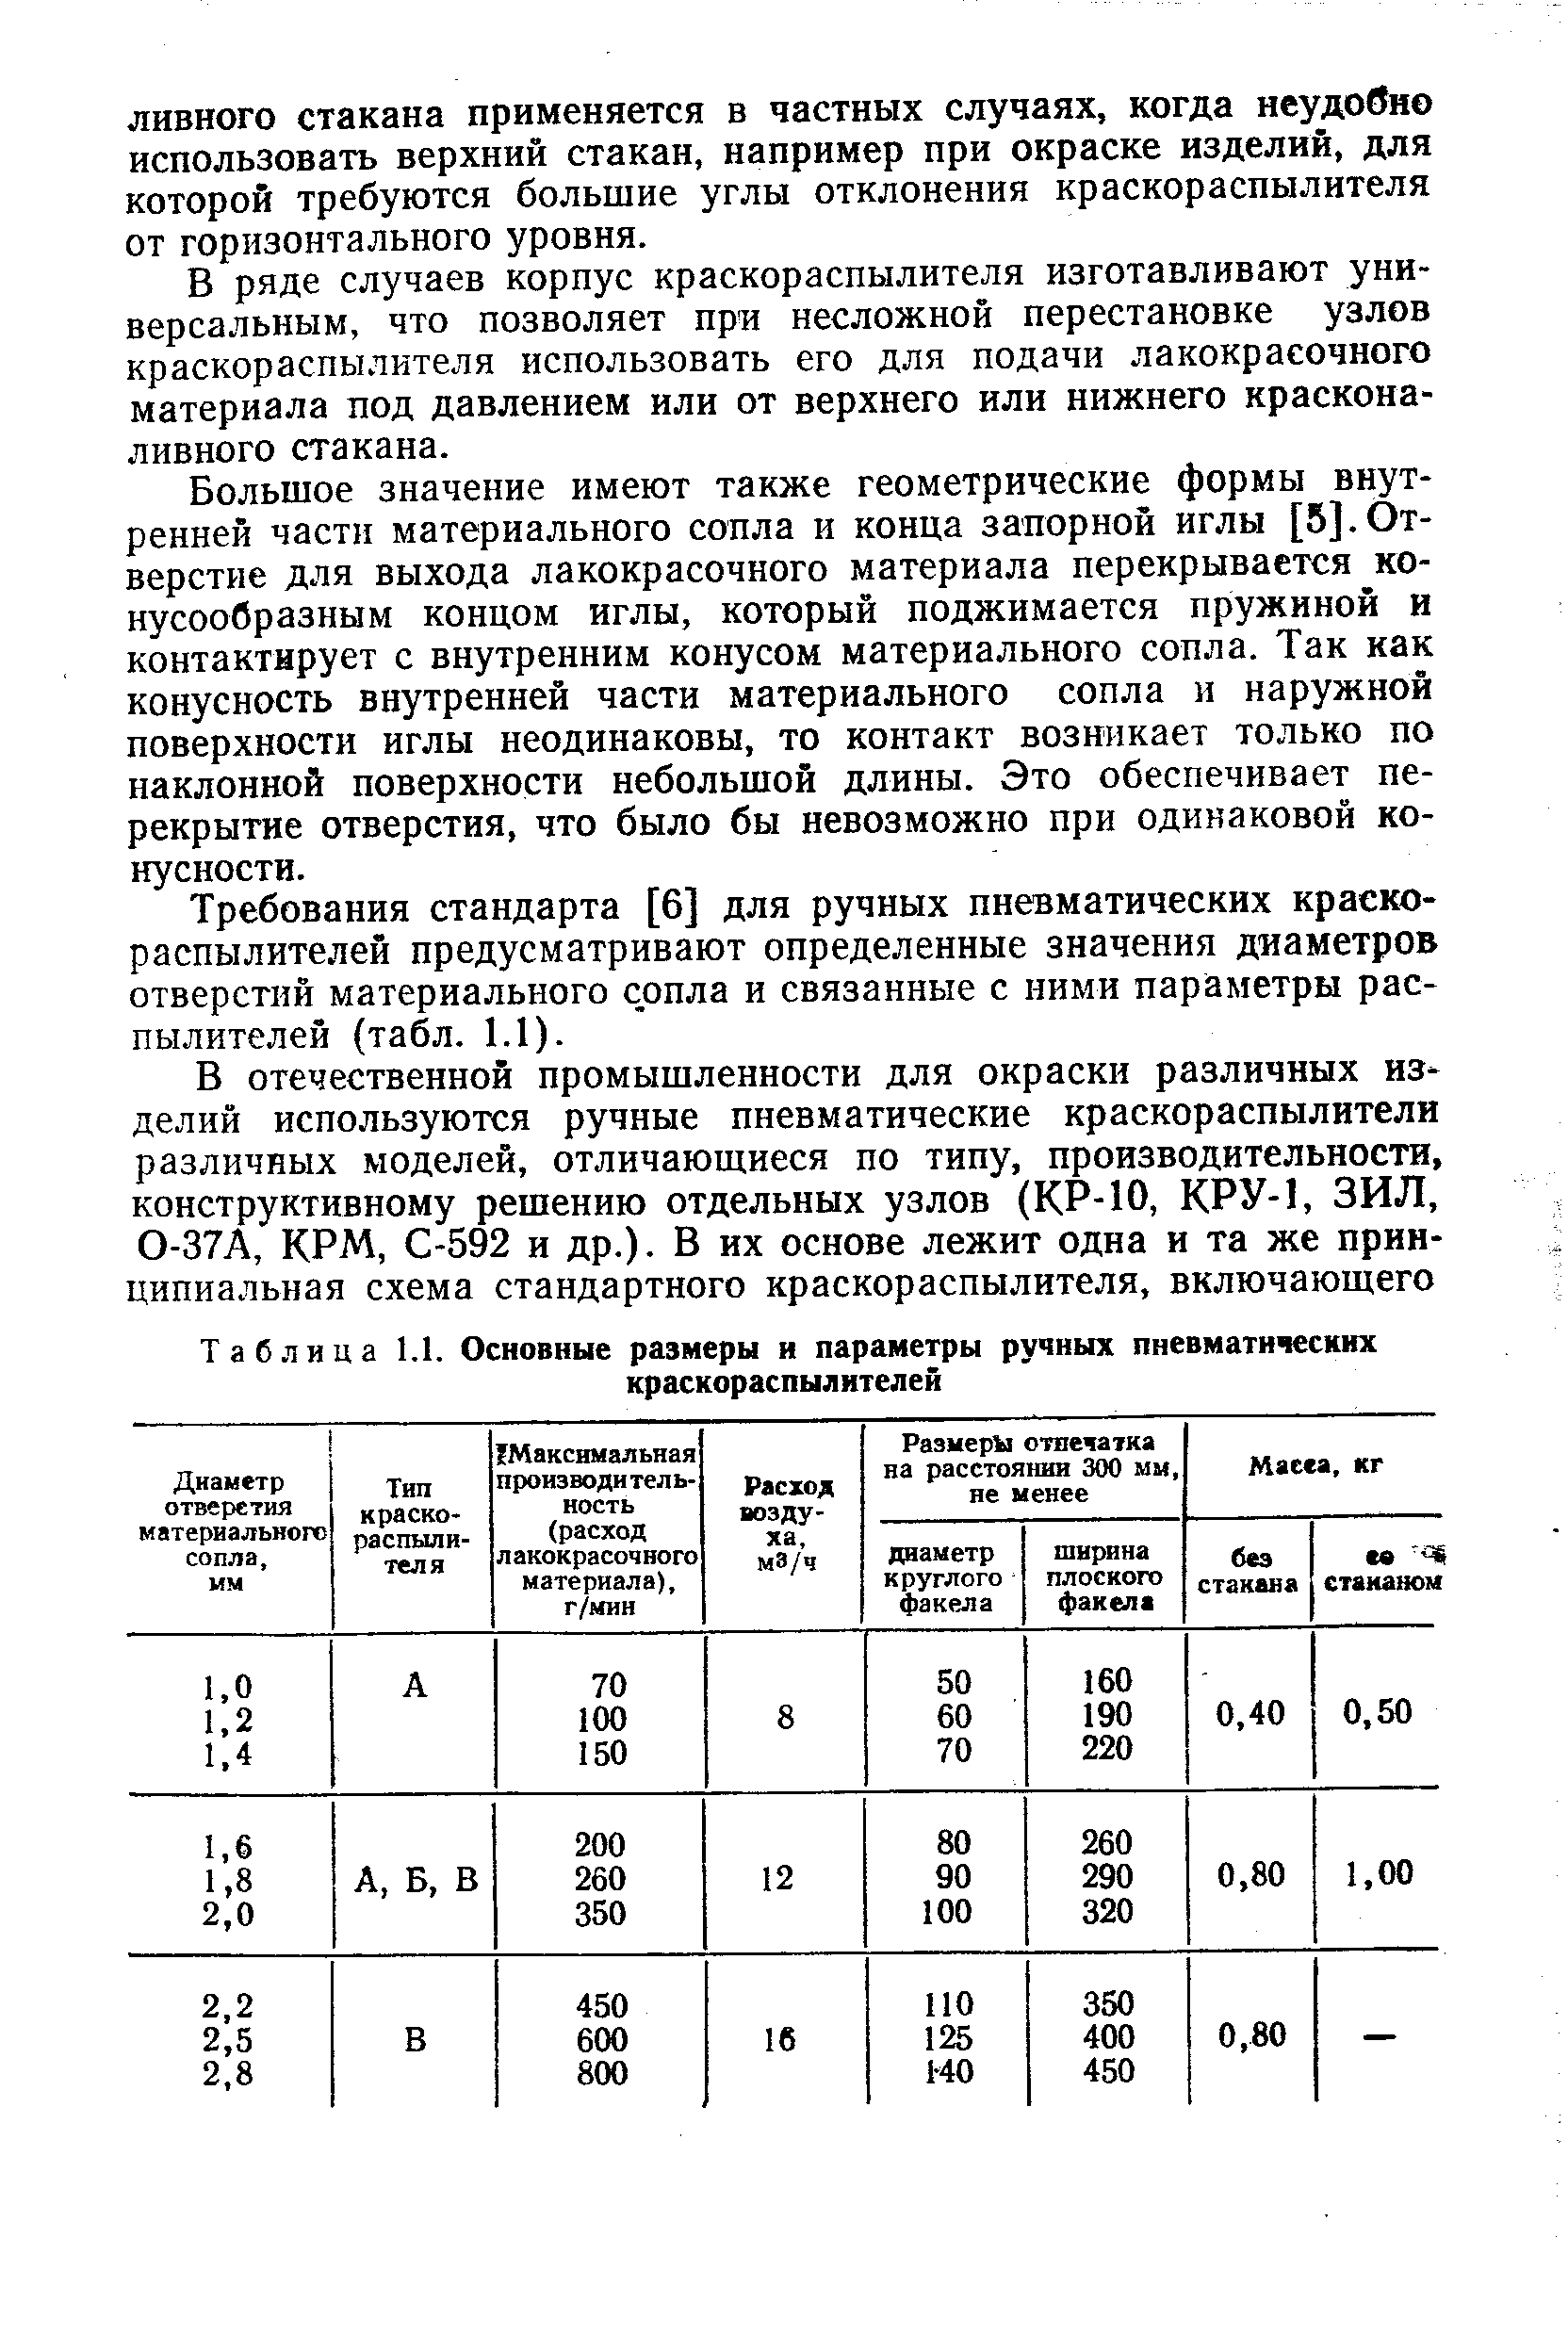 Таблица 1.1. Основные размеры и параметры ручных пневматических
